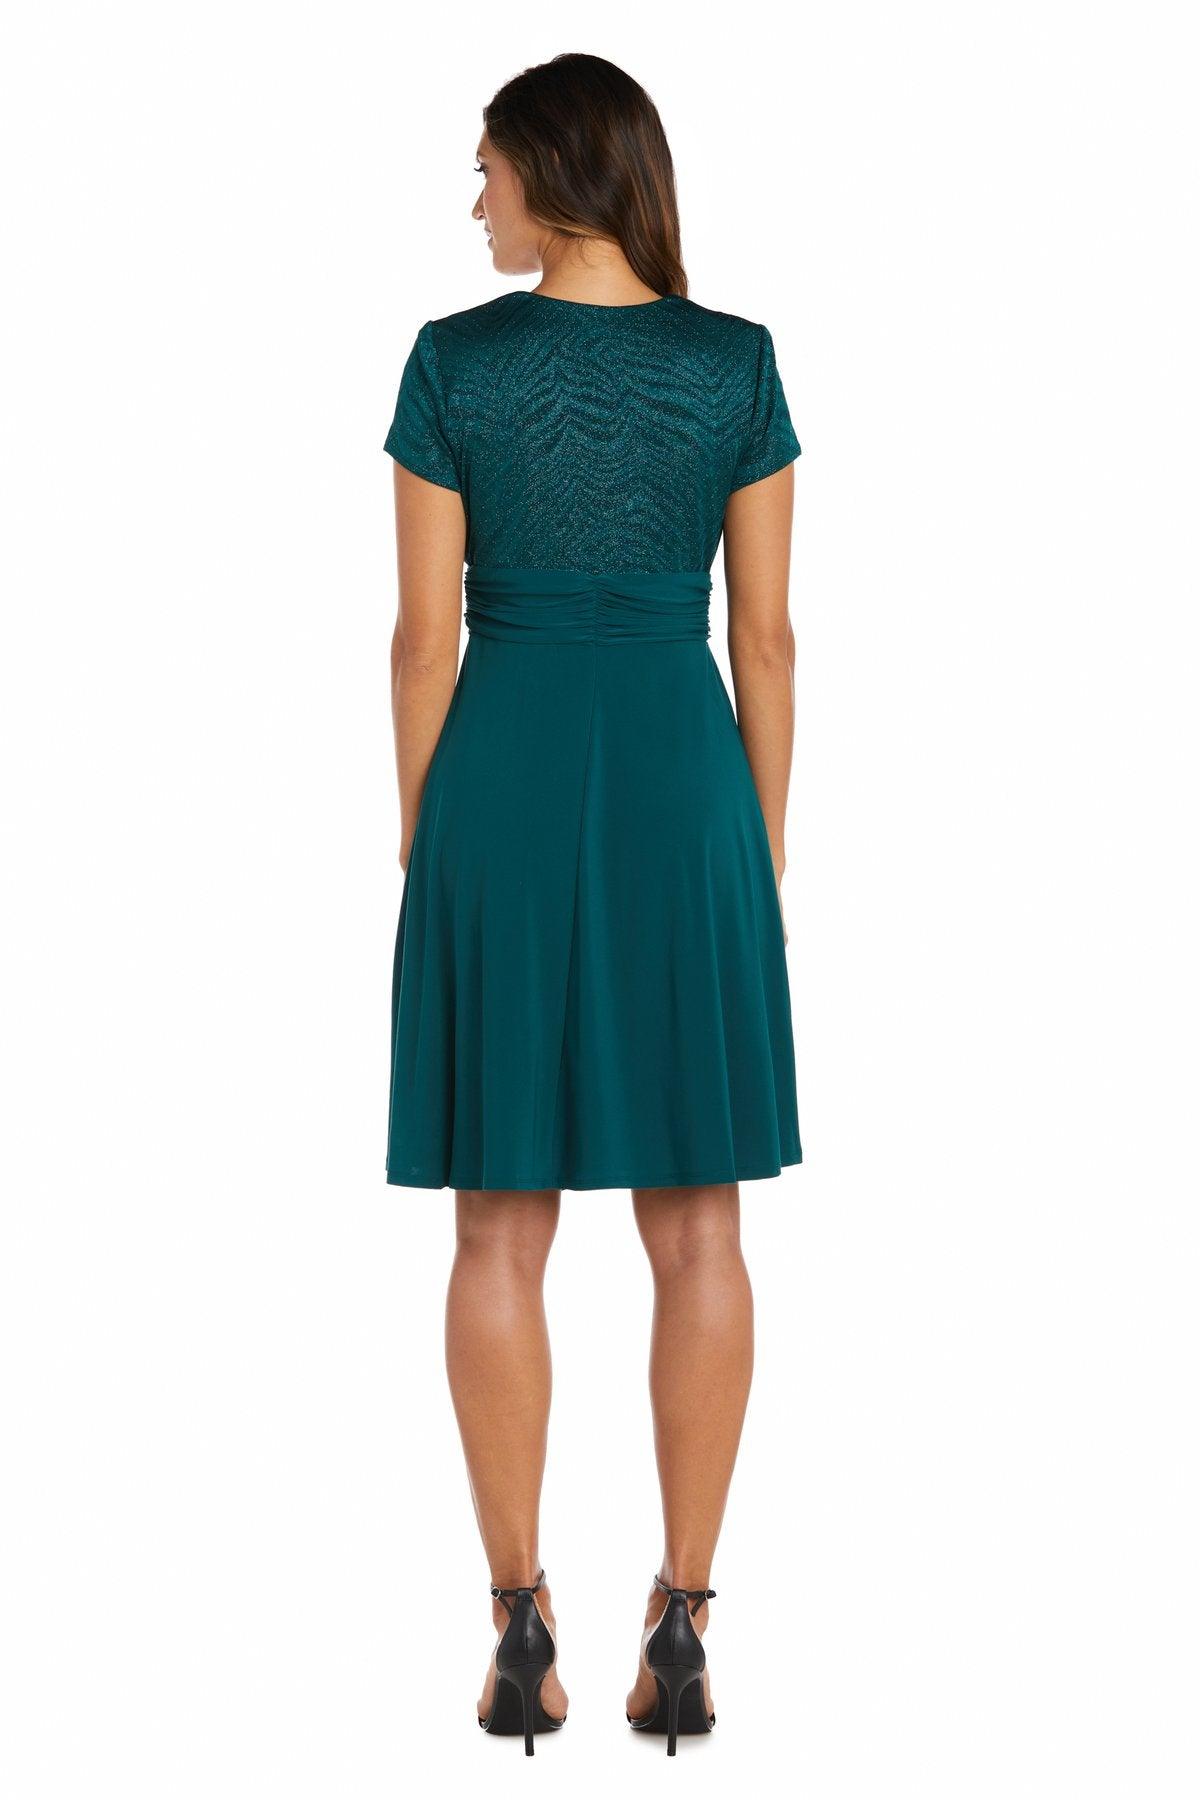 R&M Richards Short Formal Plus Size Dress Sale - The Dress Outlet